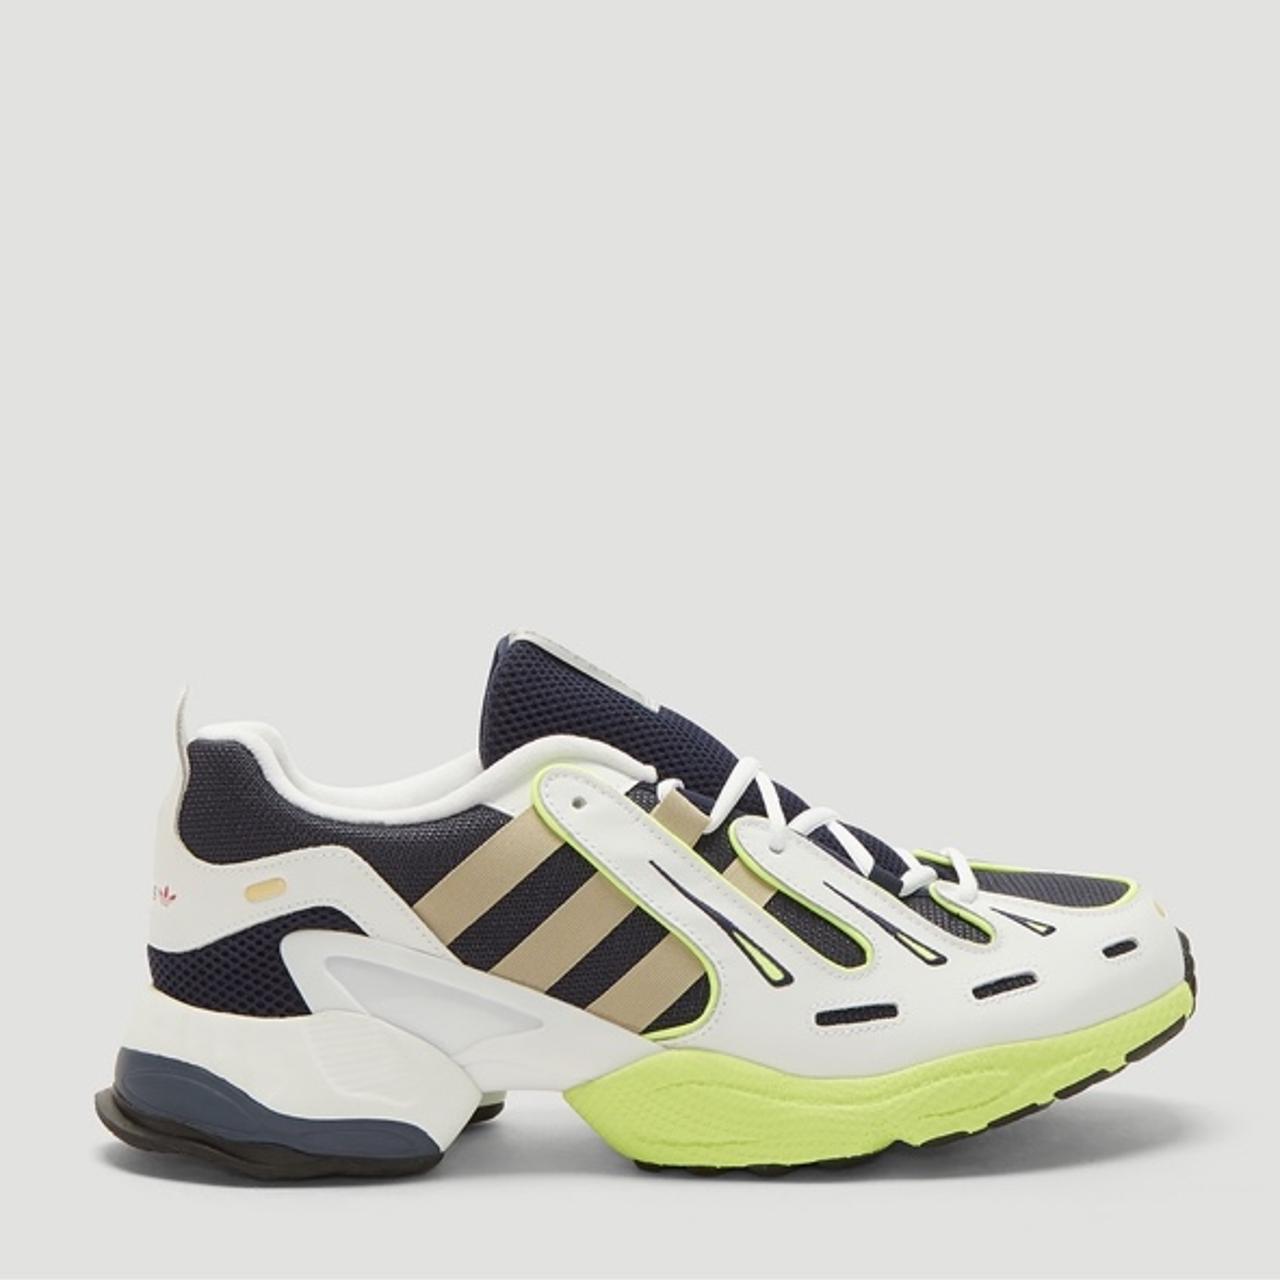 Men’s Adidas EQT Gazelle sneakers. White, tan, neon... - Depop